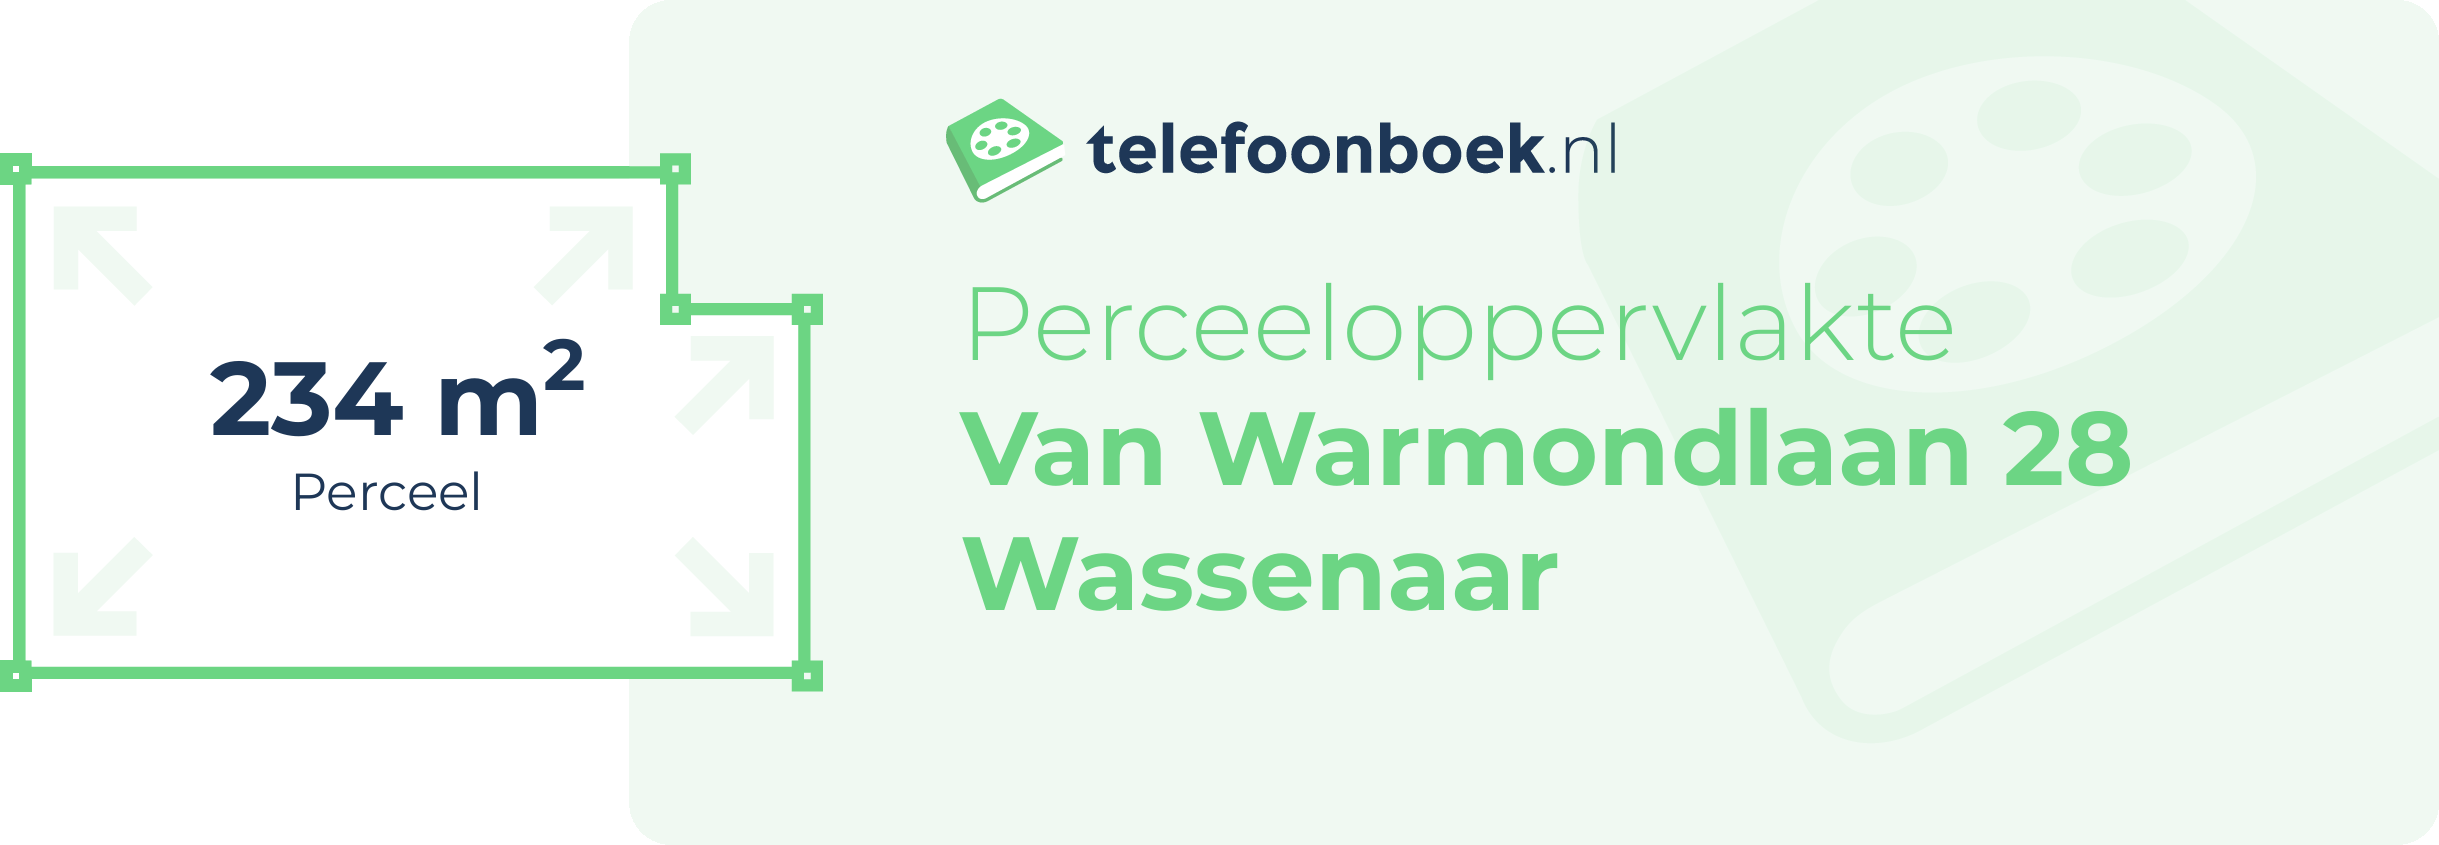 Perceeloppervlakte Van Warmondlaan 28 Wassenaar